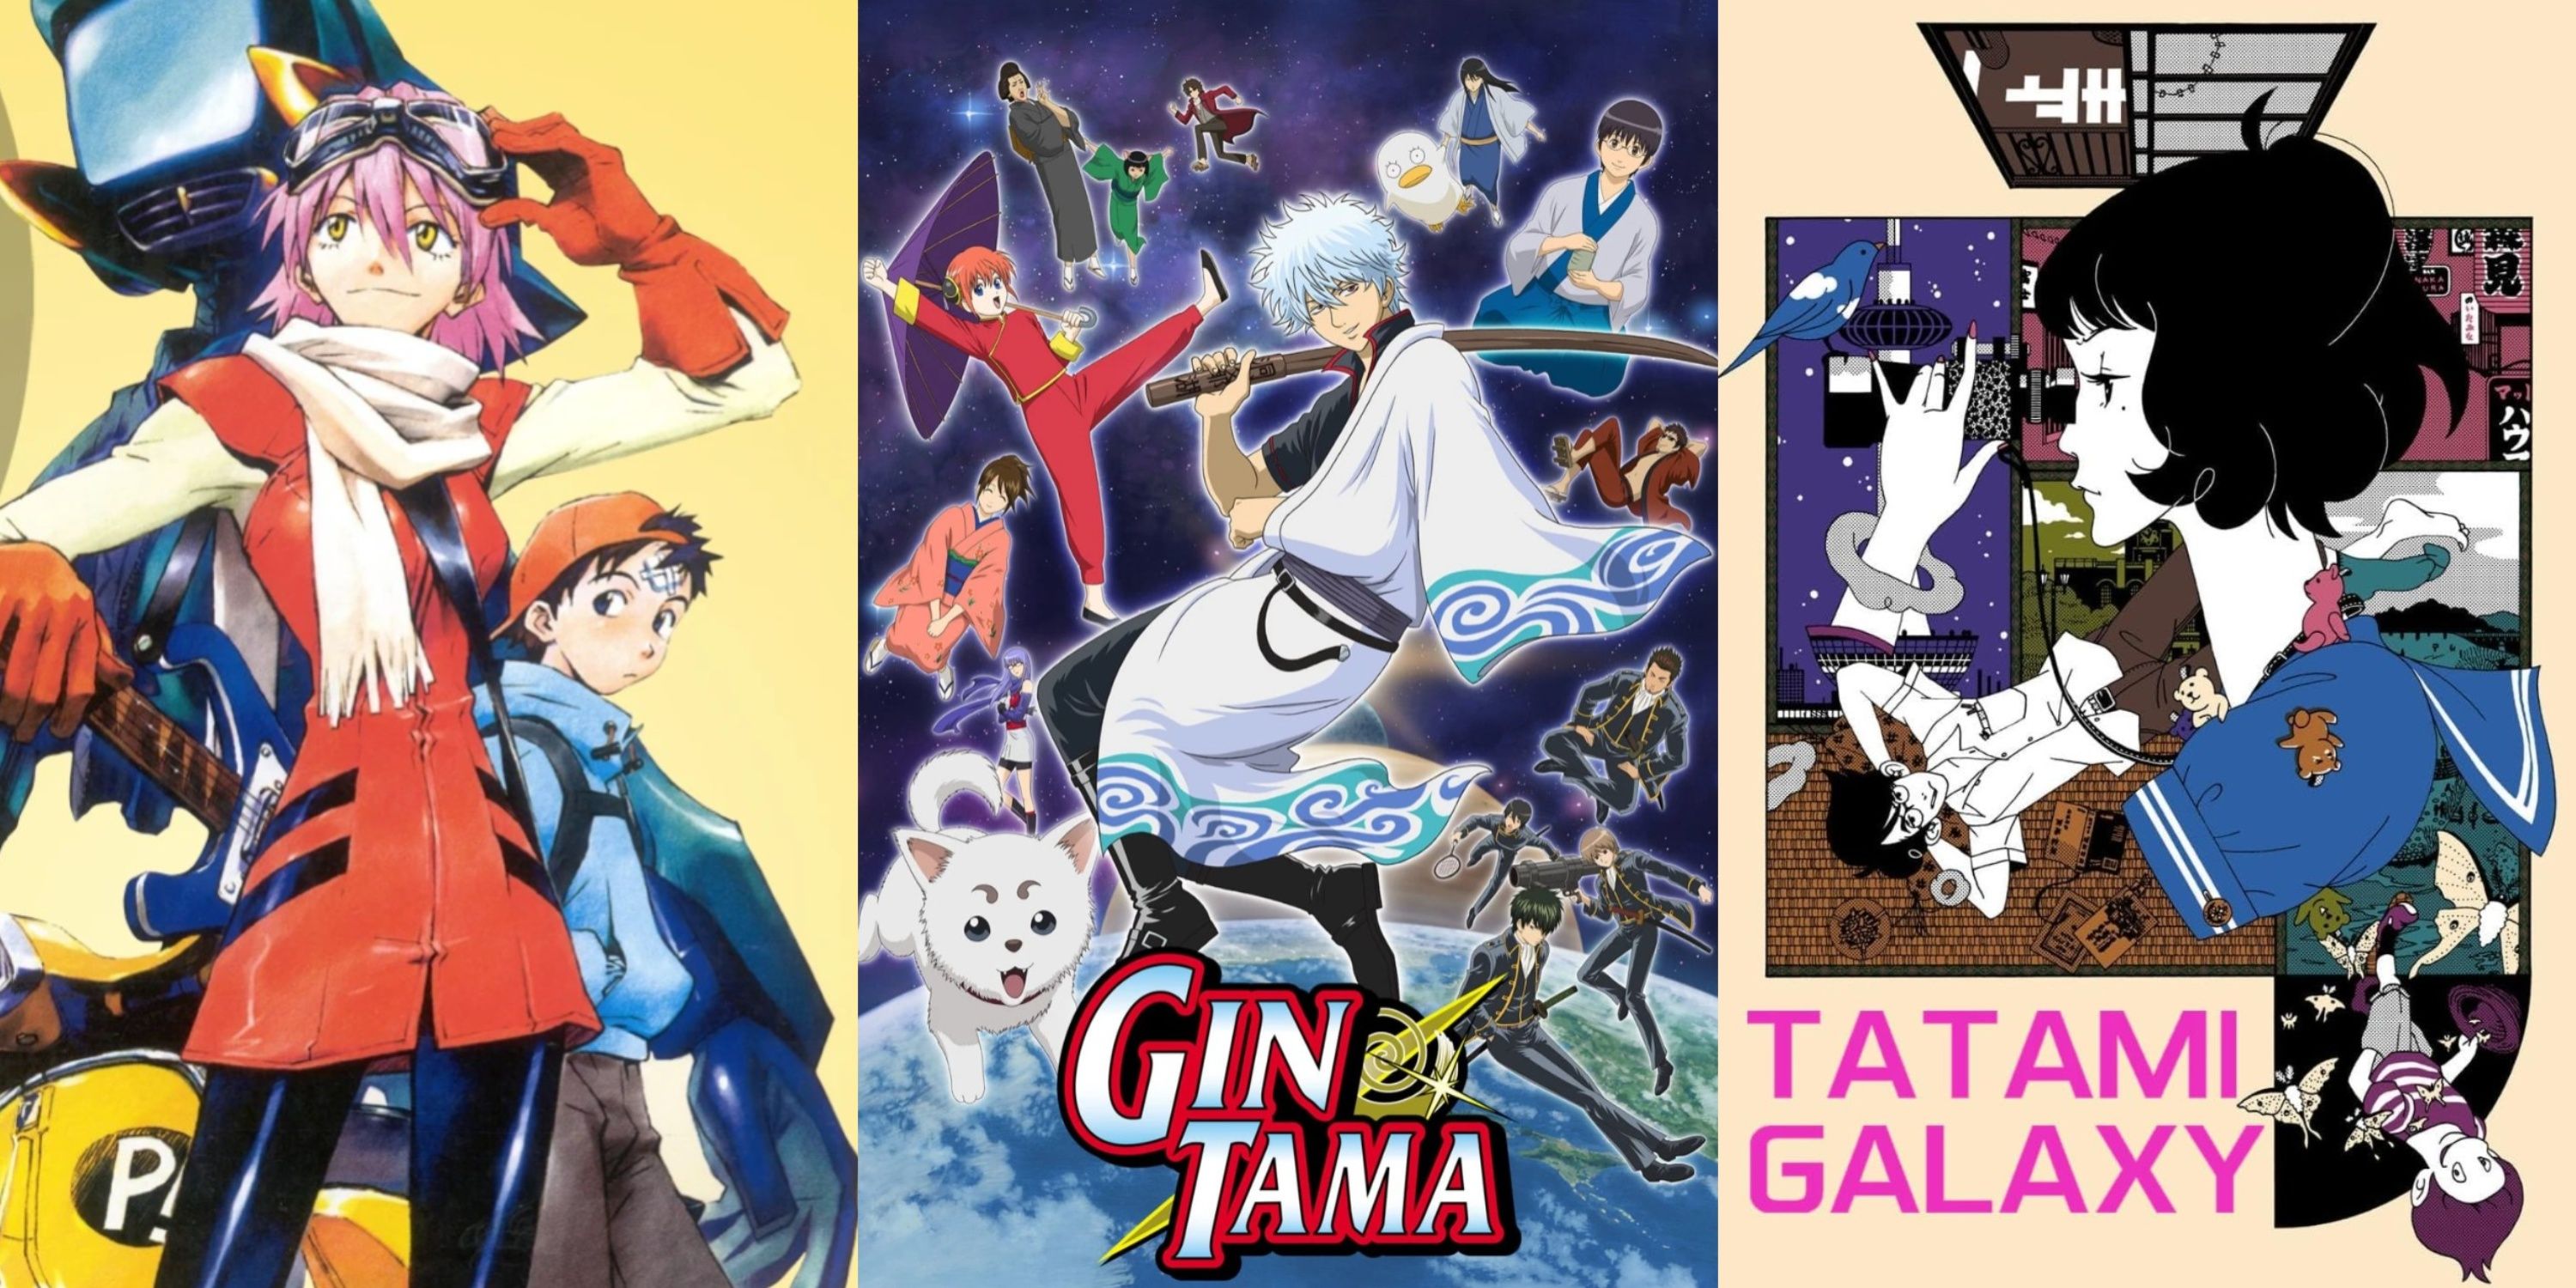 Meta Anime Gintama FLCL Tatami Galaxy - Featured